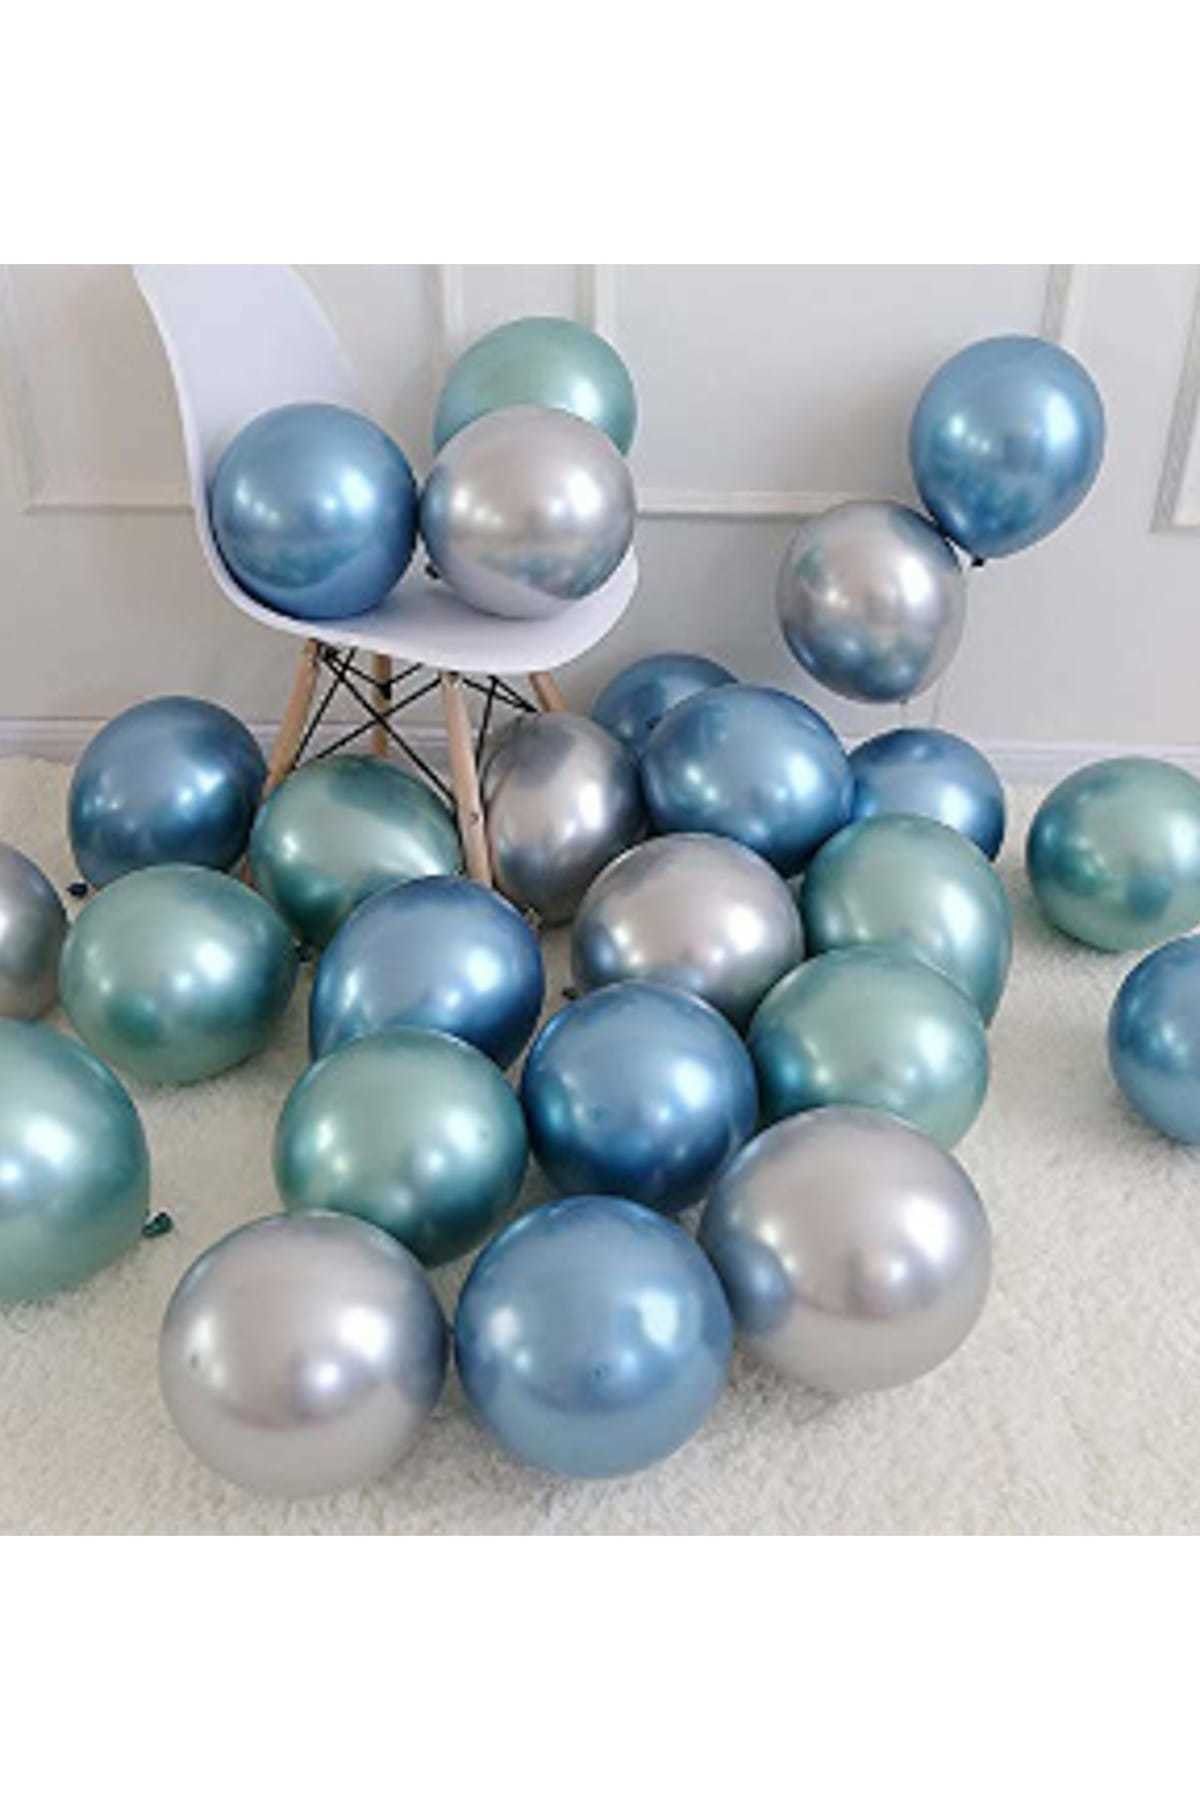 Parti Dolabı Krom Parlak Metalik Yeşil-Mavi-Gümüş Renk 5'Li Balon ( 3'Lü Renk Seti )